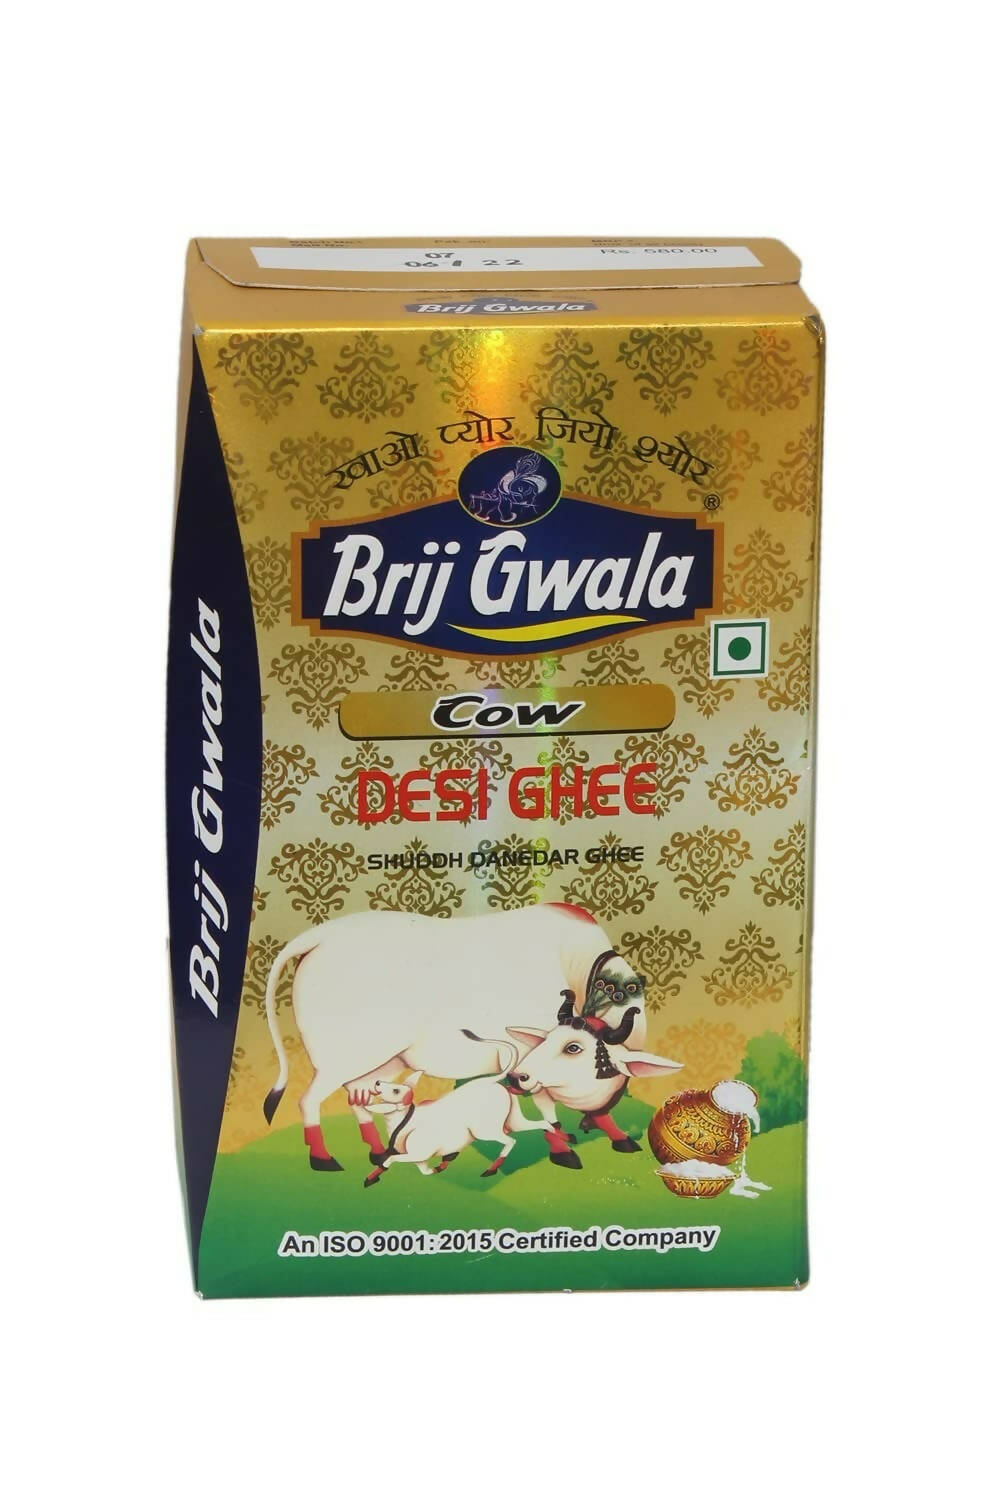 Brij Gwala Desi Cow Ghee